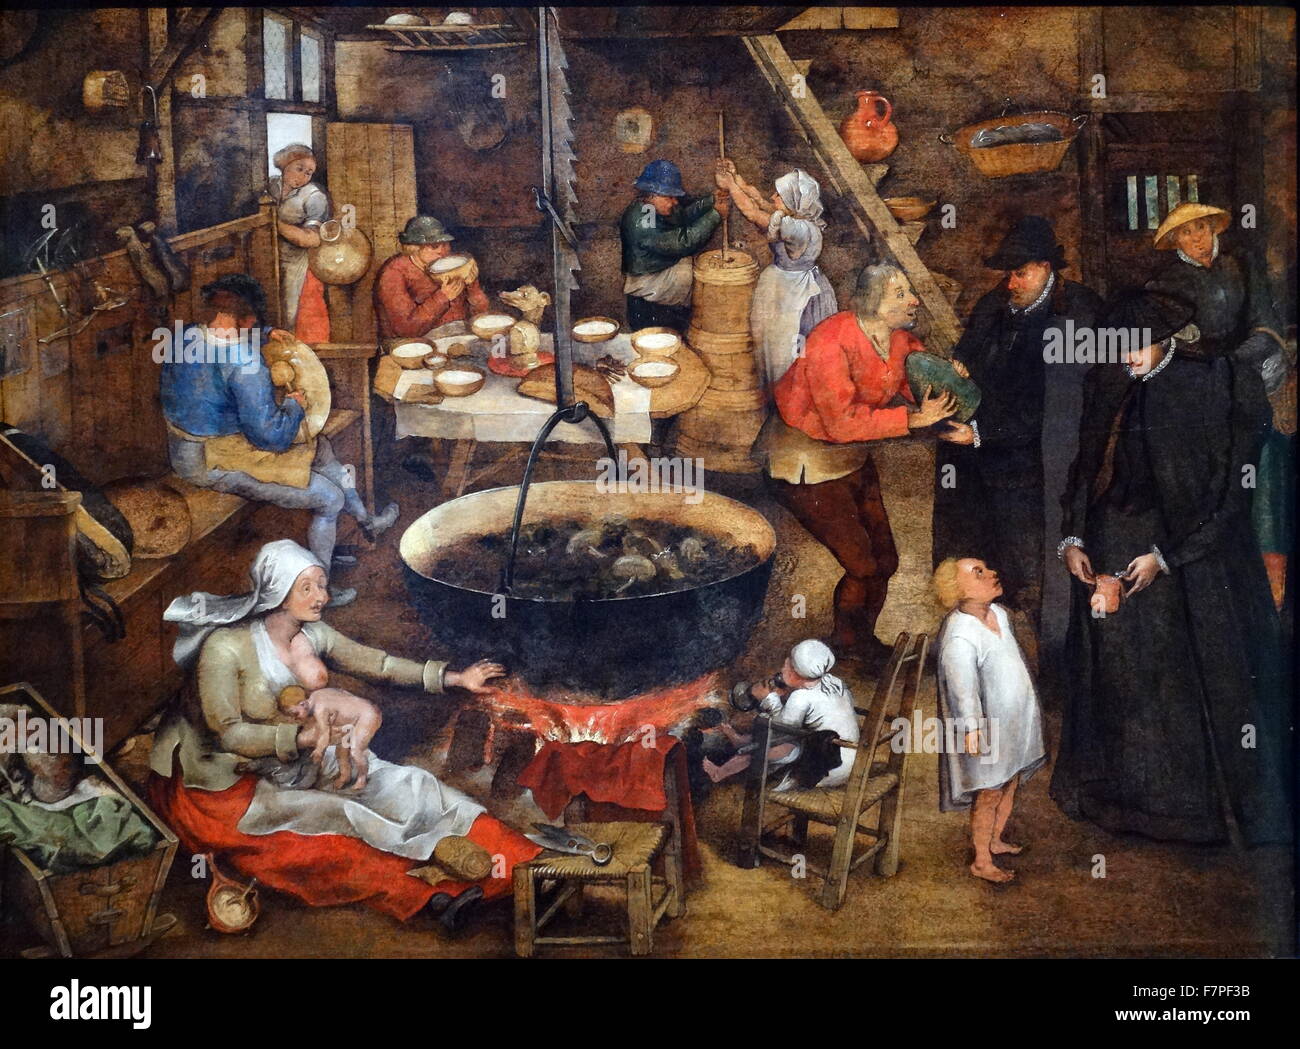 Der Besuch des Taufpaten von Pieter Brueghel dem jüngeren 1565-1638. Öl auf Holz Stockfoto